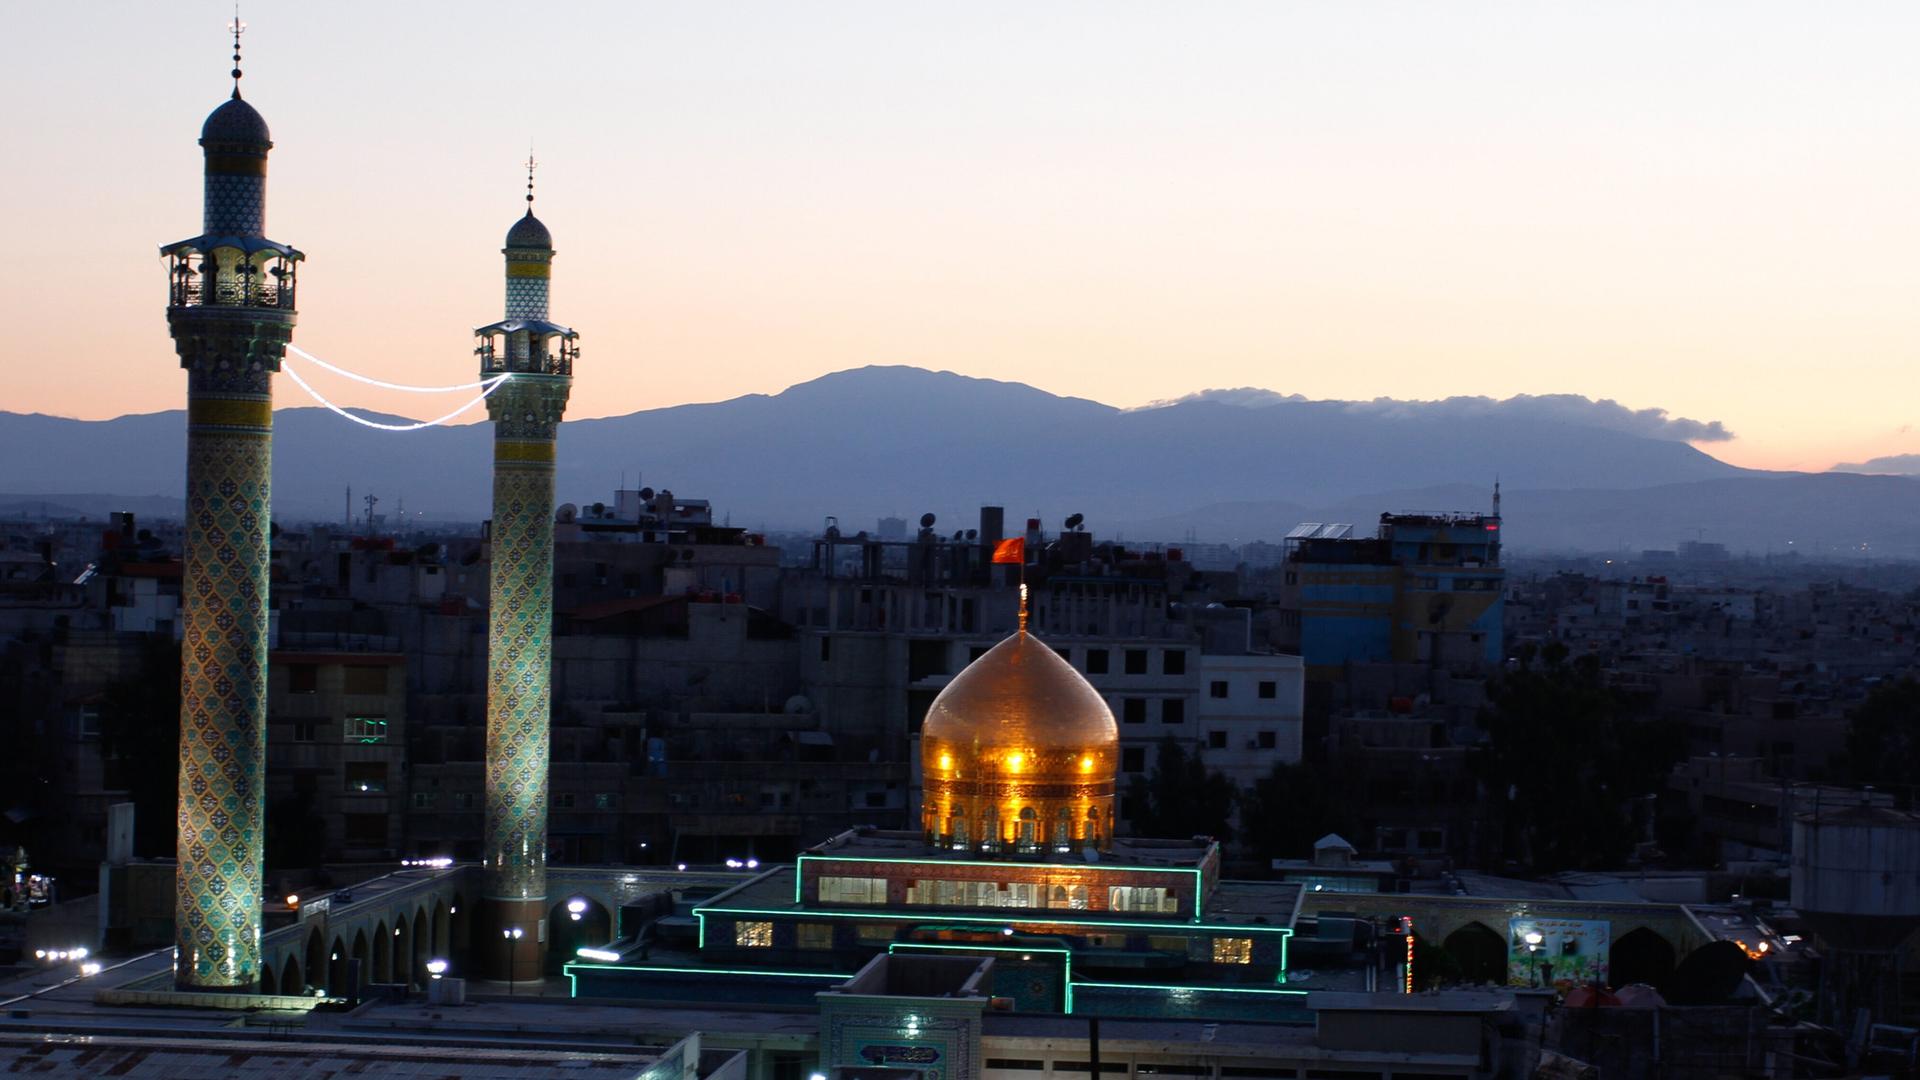 Das Mausoleum von Sajeda Seinab nahe Damaskus in der Abenddämmerung, zwei Minarette und eine goldene Kuppel sind zu sehen.